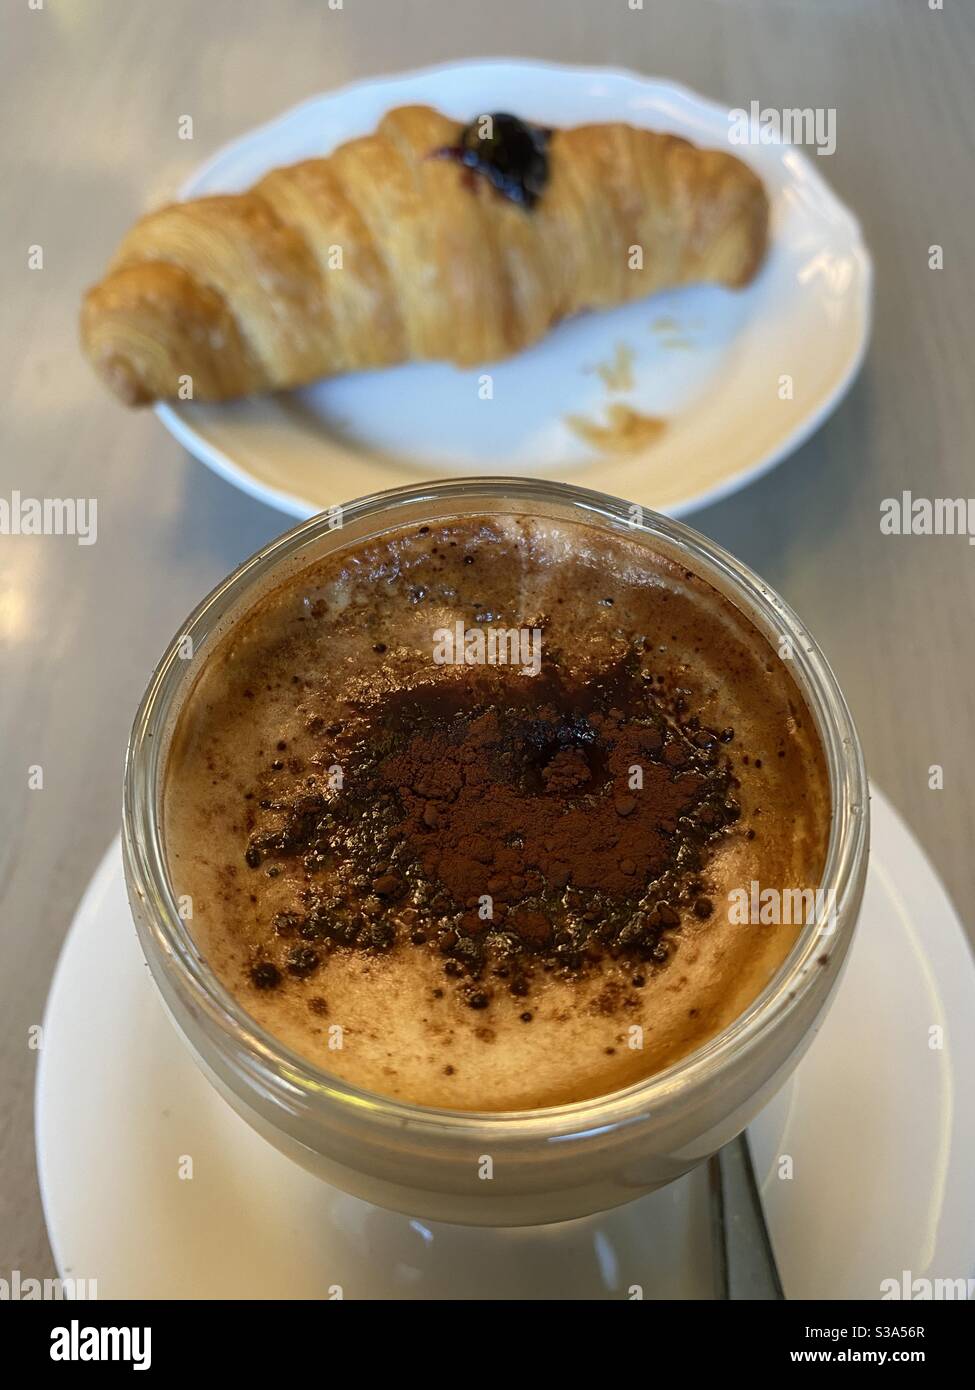 Moretto, café espresso caliente con leche y chocolate en polvo y un croissant fresco Foto de stock